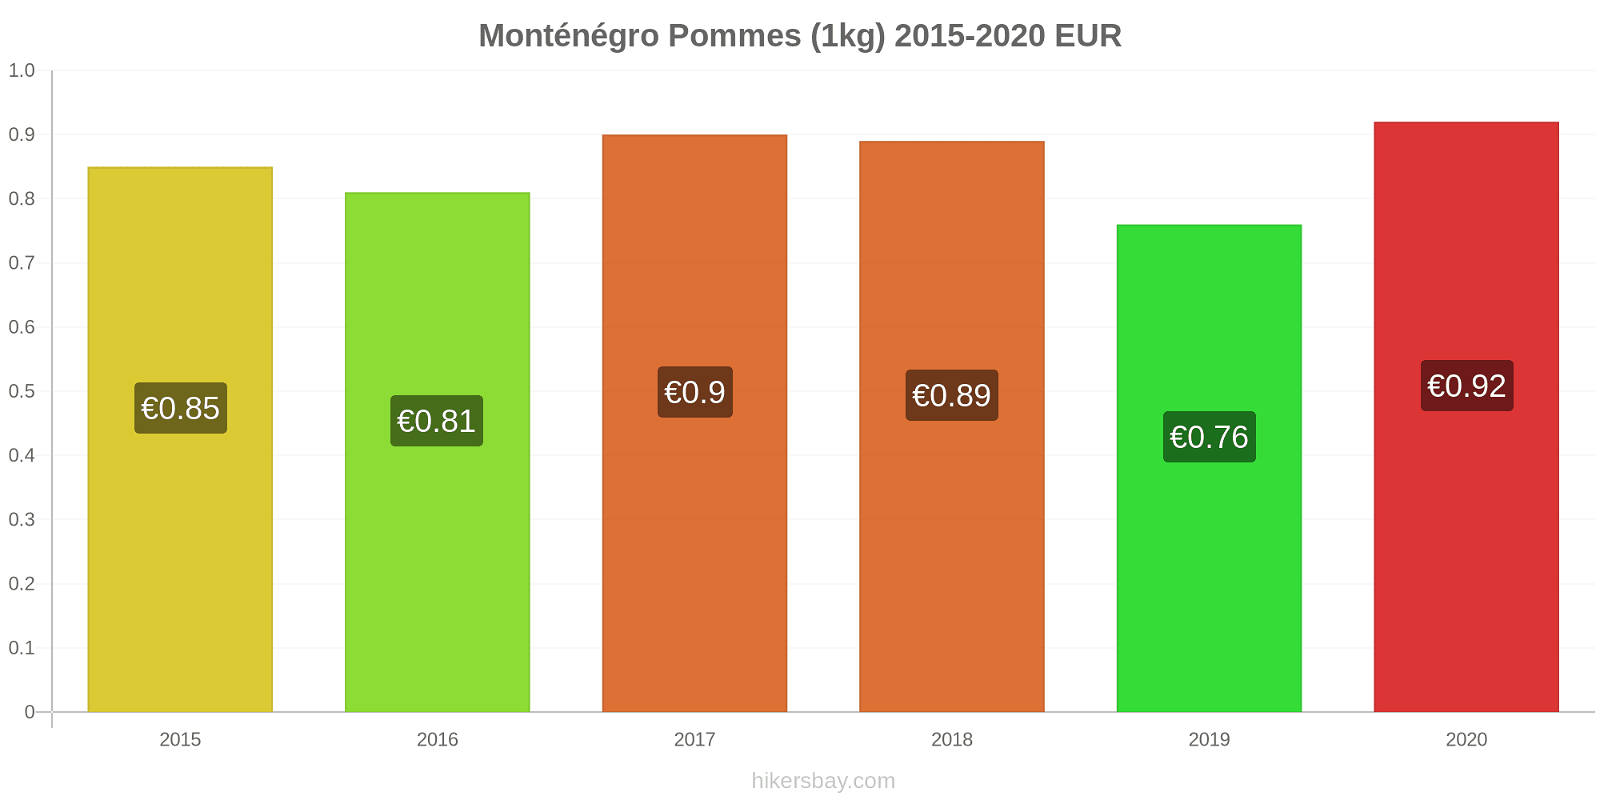 Monténégro changements de prix Pommes (1kg) hikersbay.com